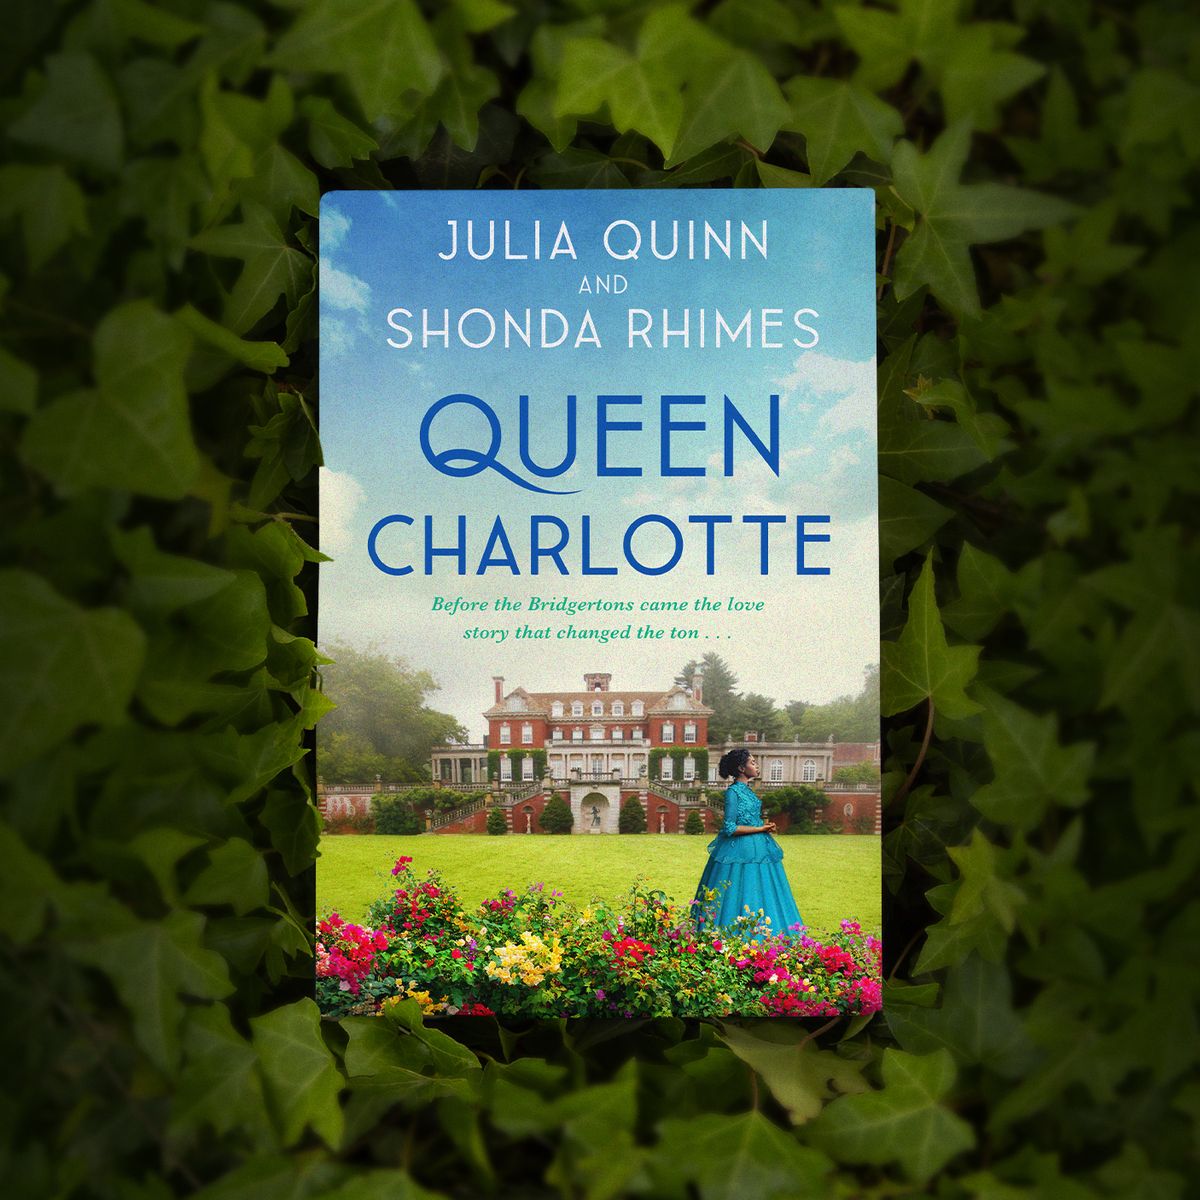 Is Julia Quinn in 'Bridgerton'? 'Bridgerton' Author Julia Quinn Cameo in  'Queen Charlotte,' Explained